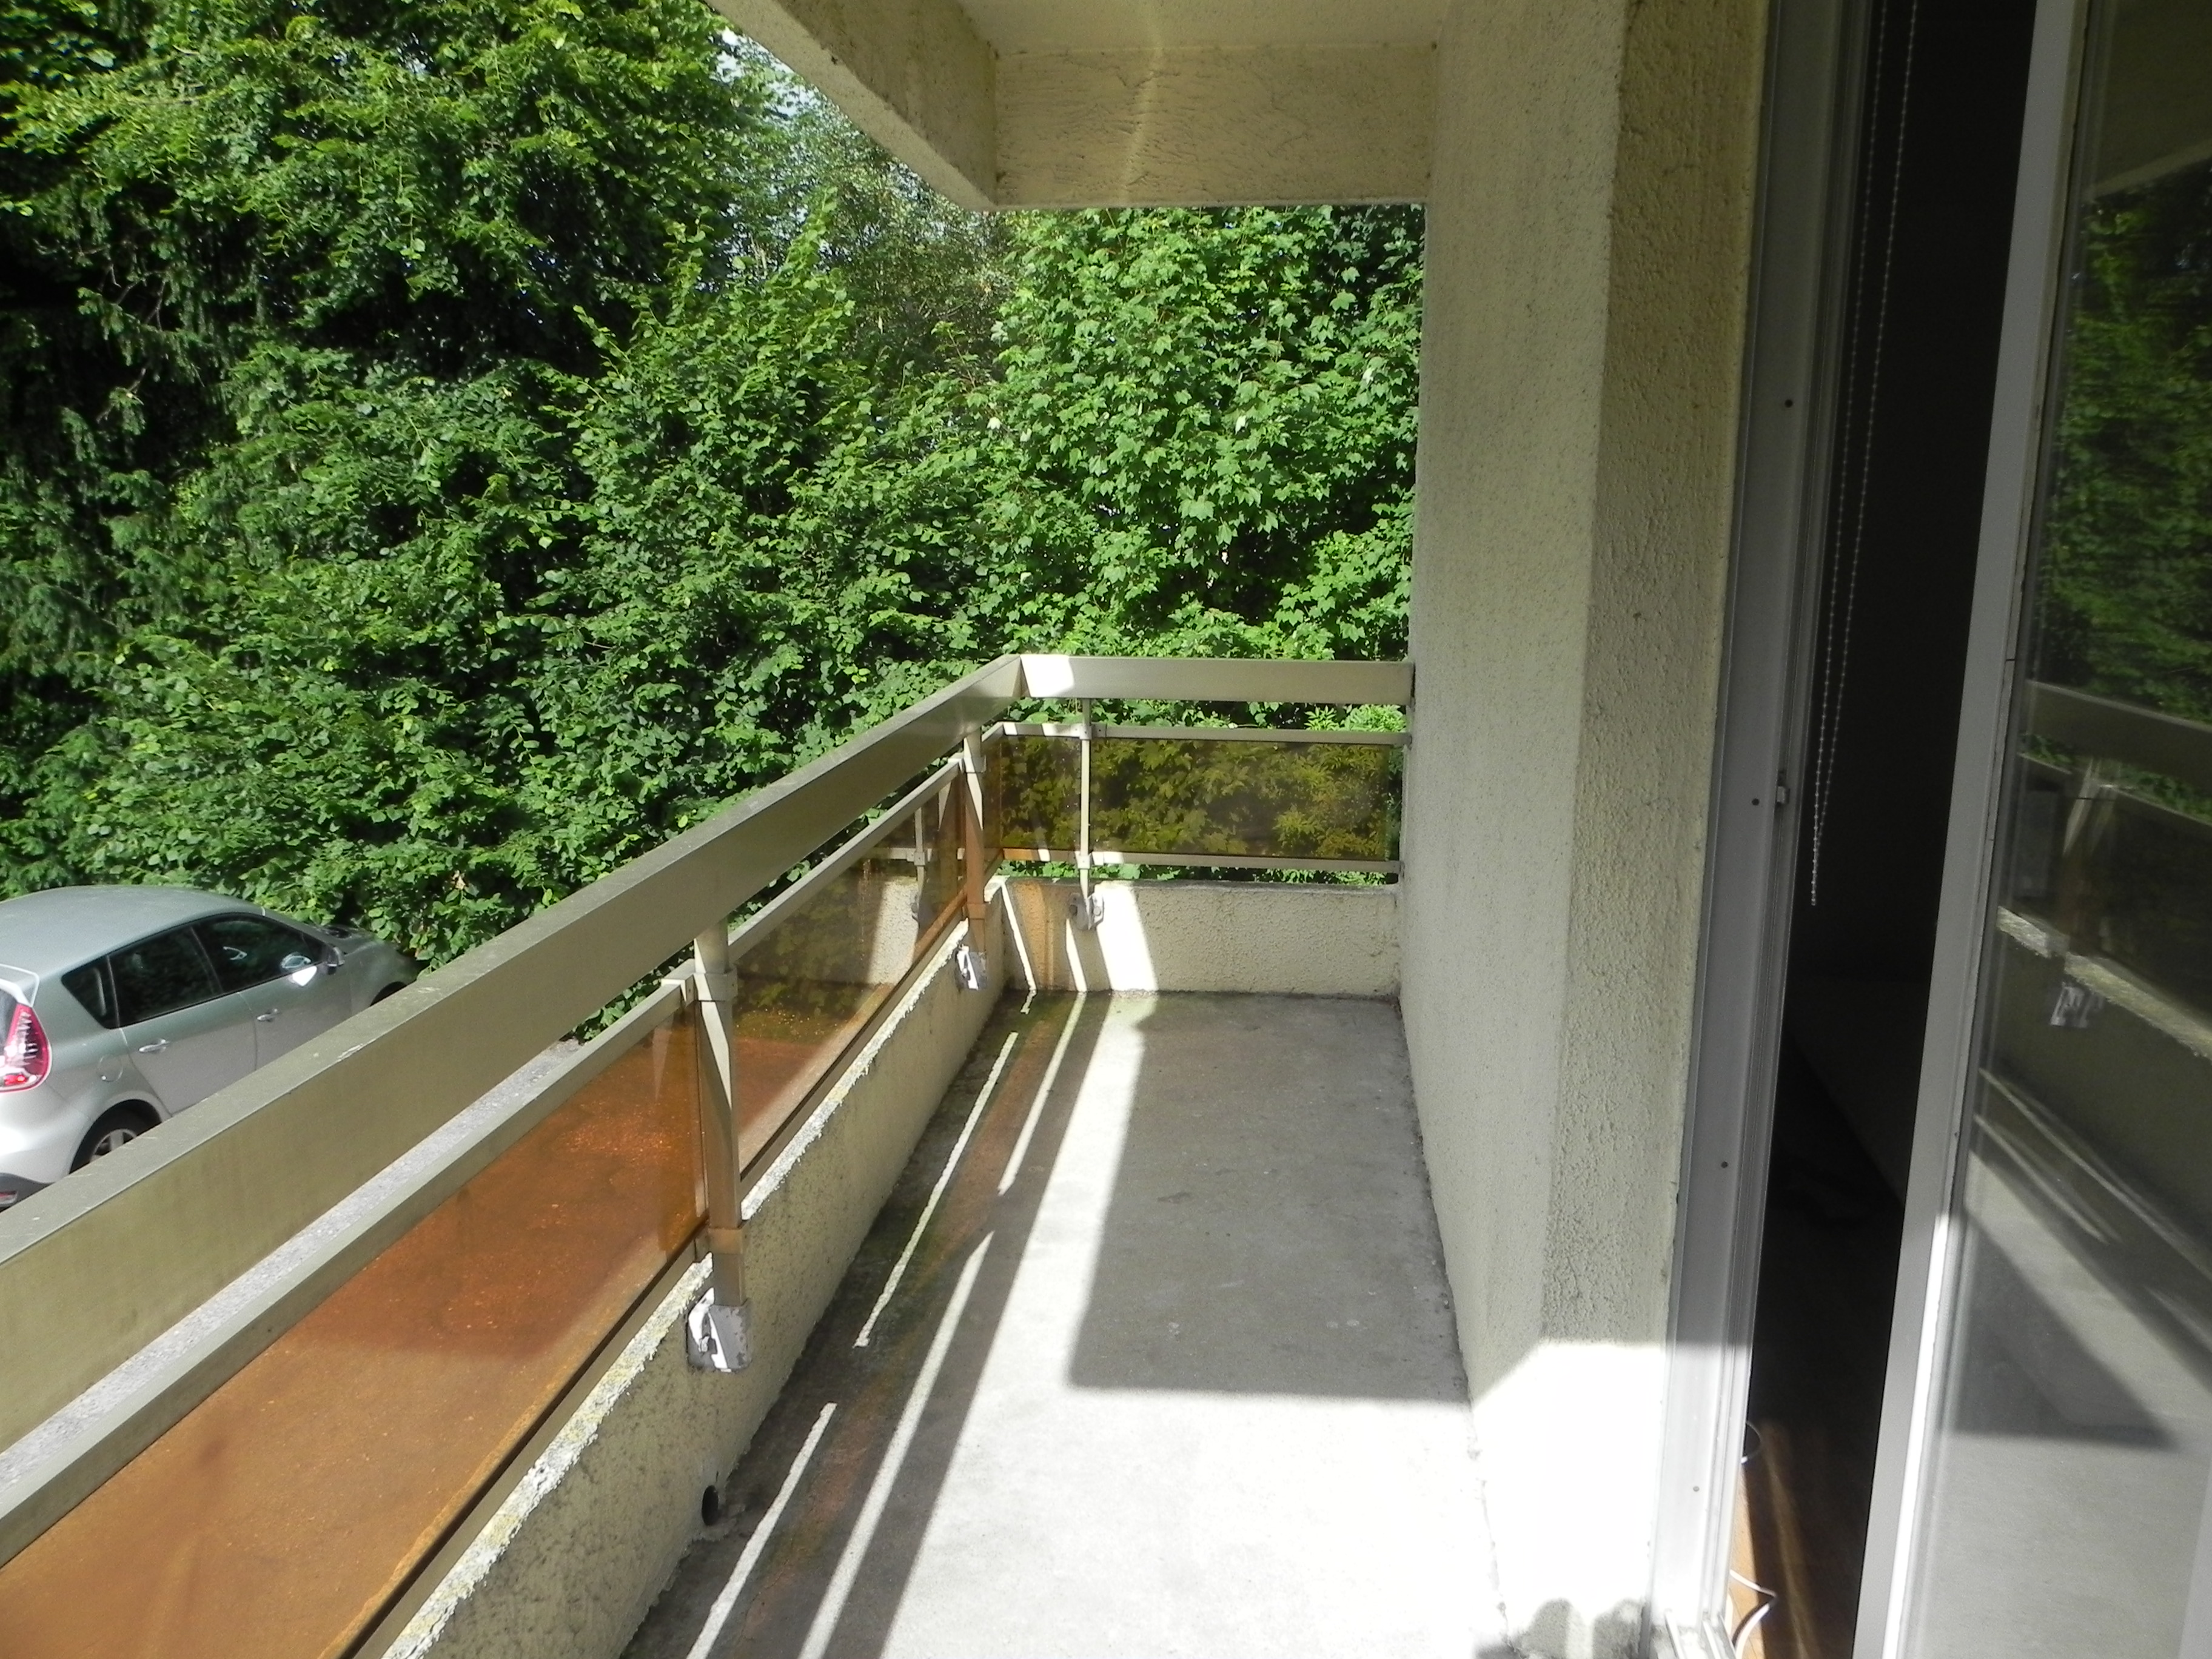 Appartement T1 avec balcon, Louviers (29m²)